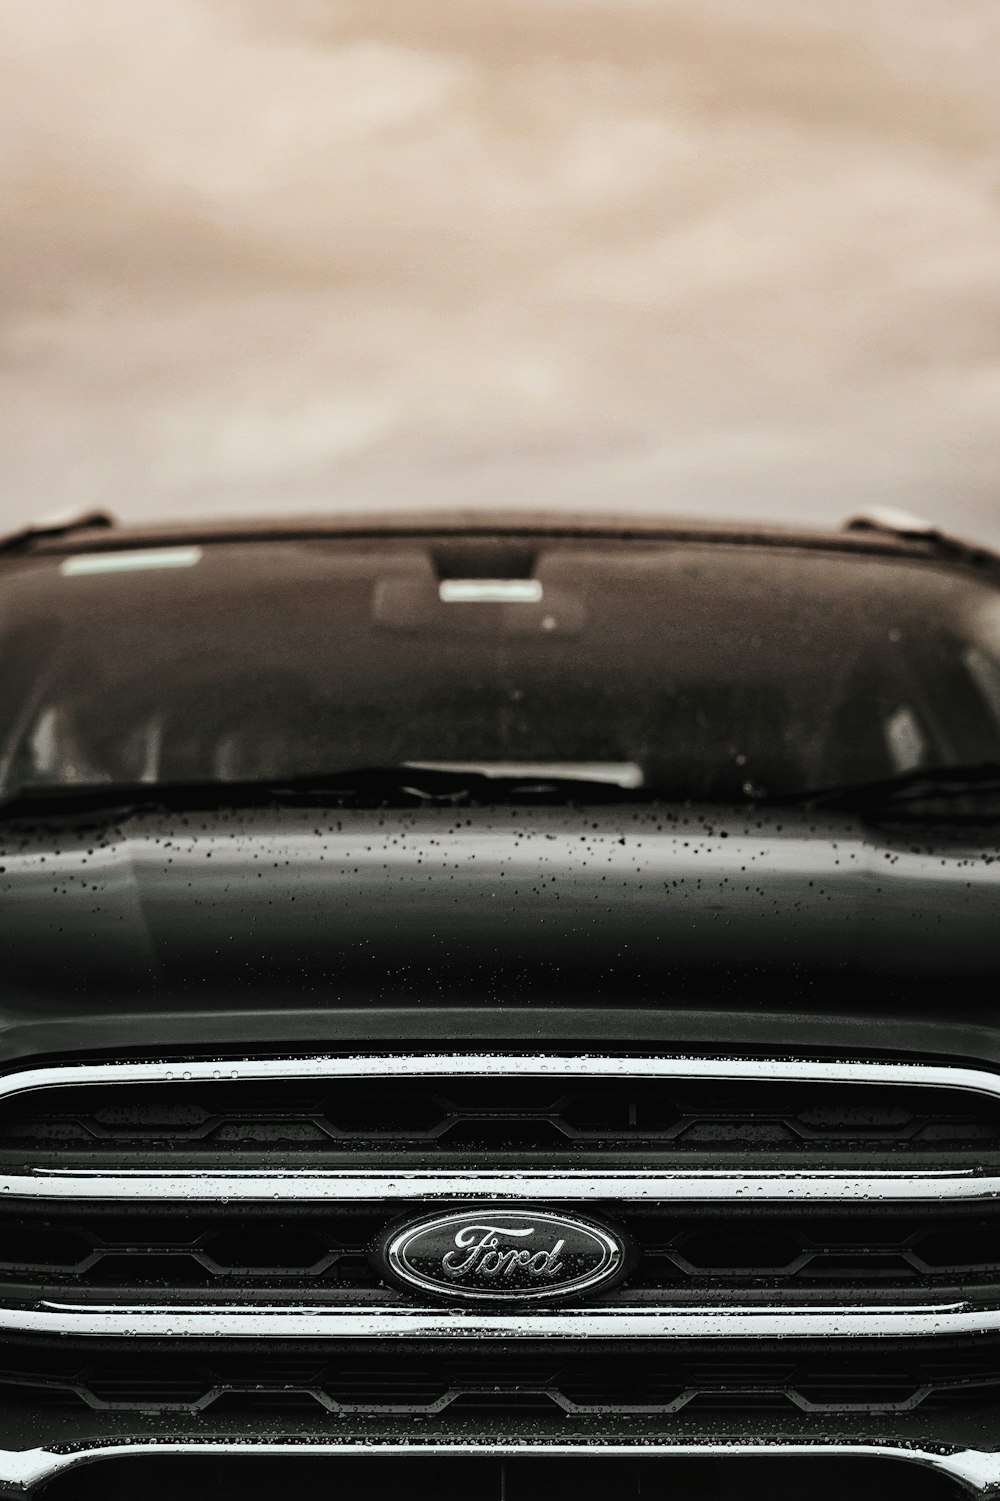 veículo Ford preto sob céu nublado